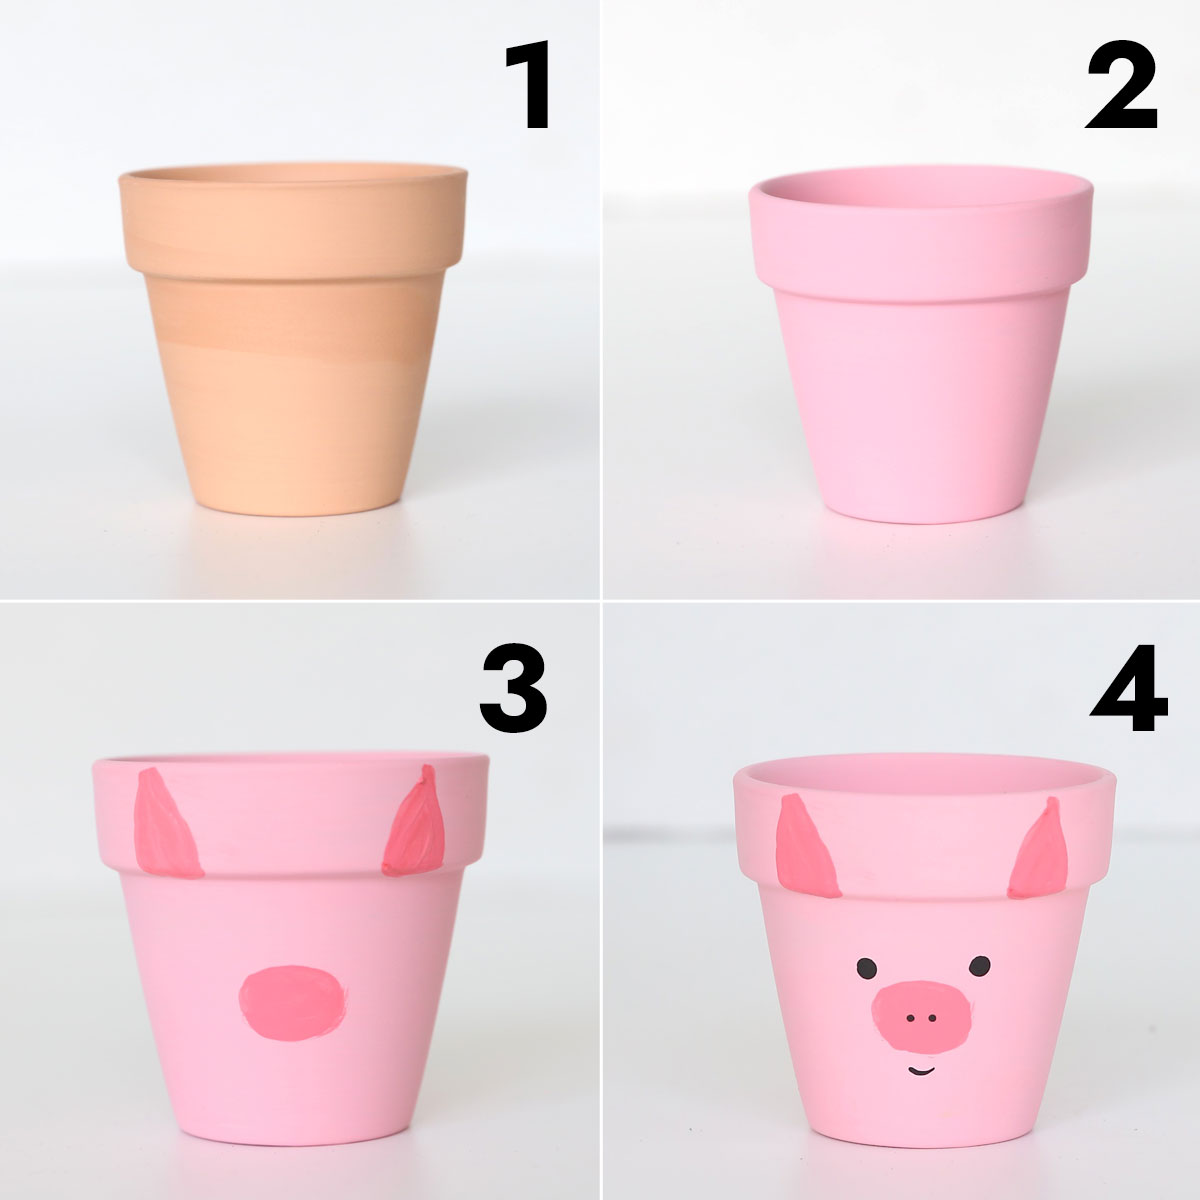 Paint bucket Craft idea, Pot painting